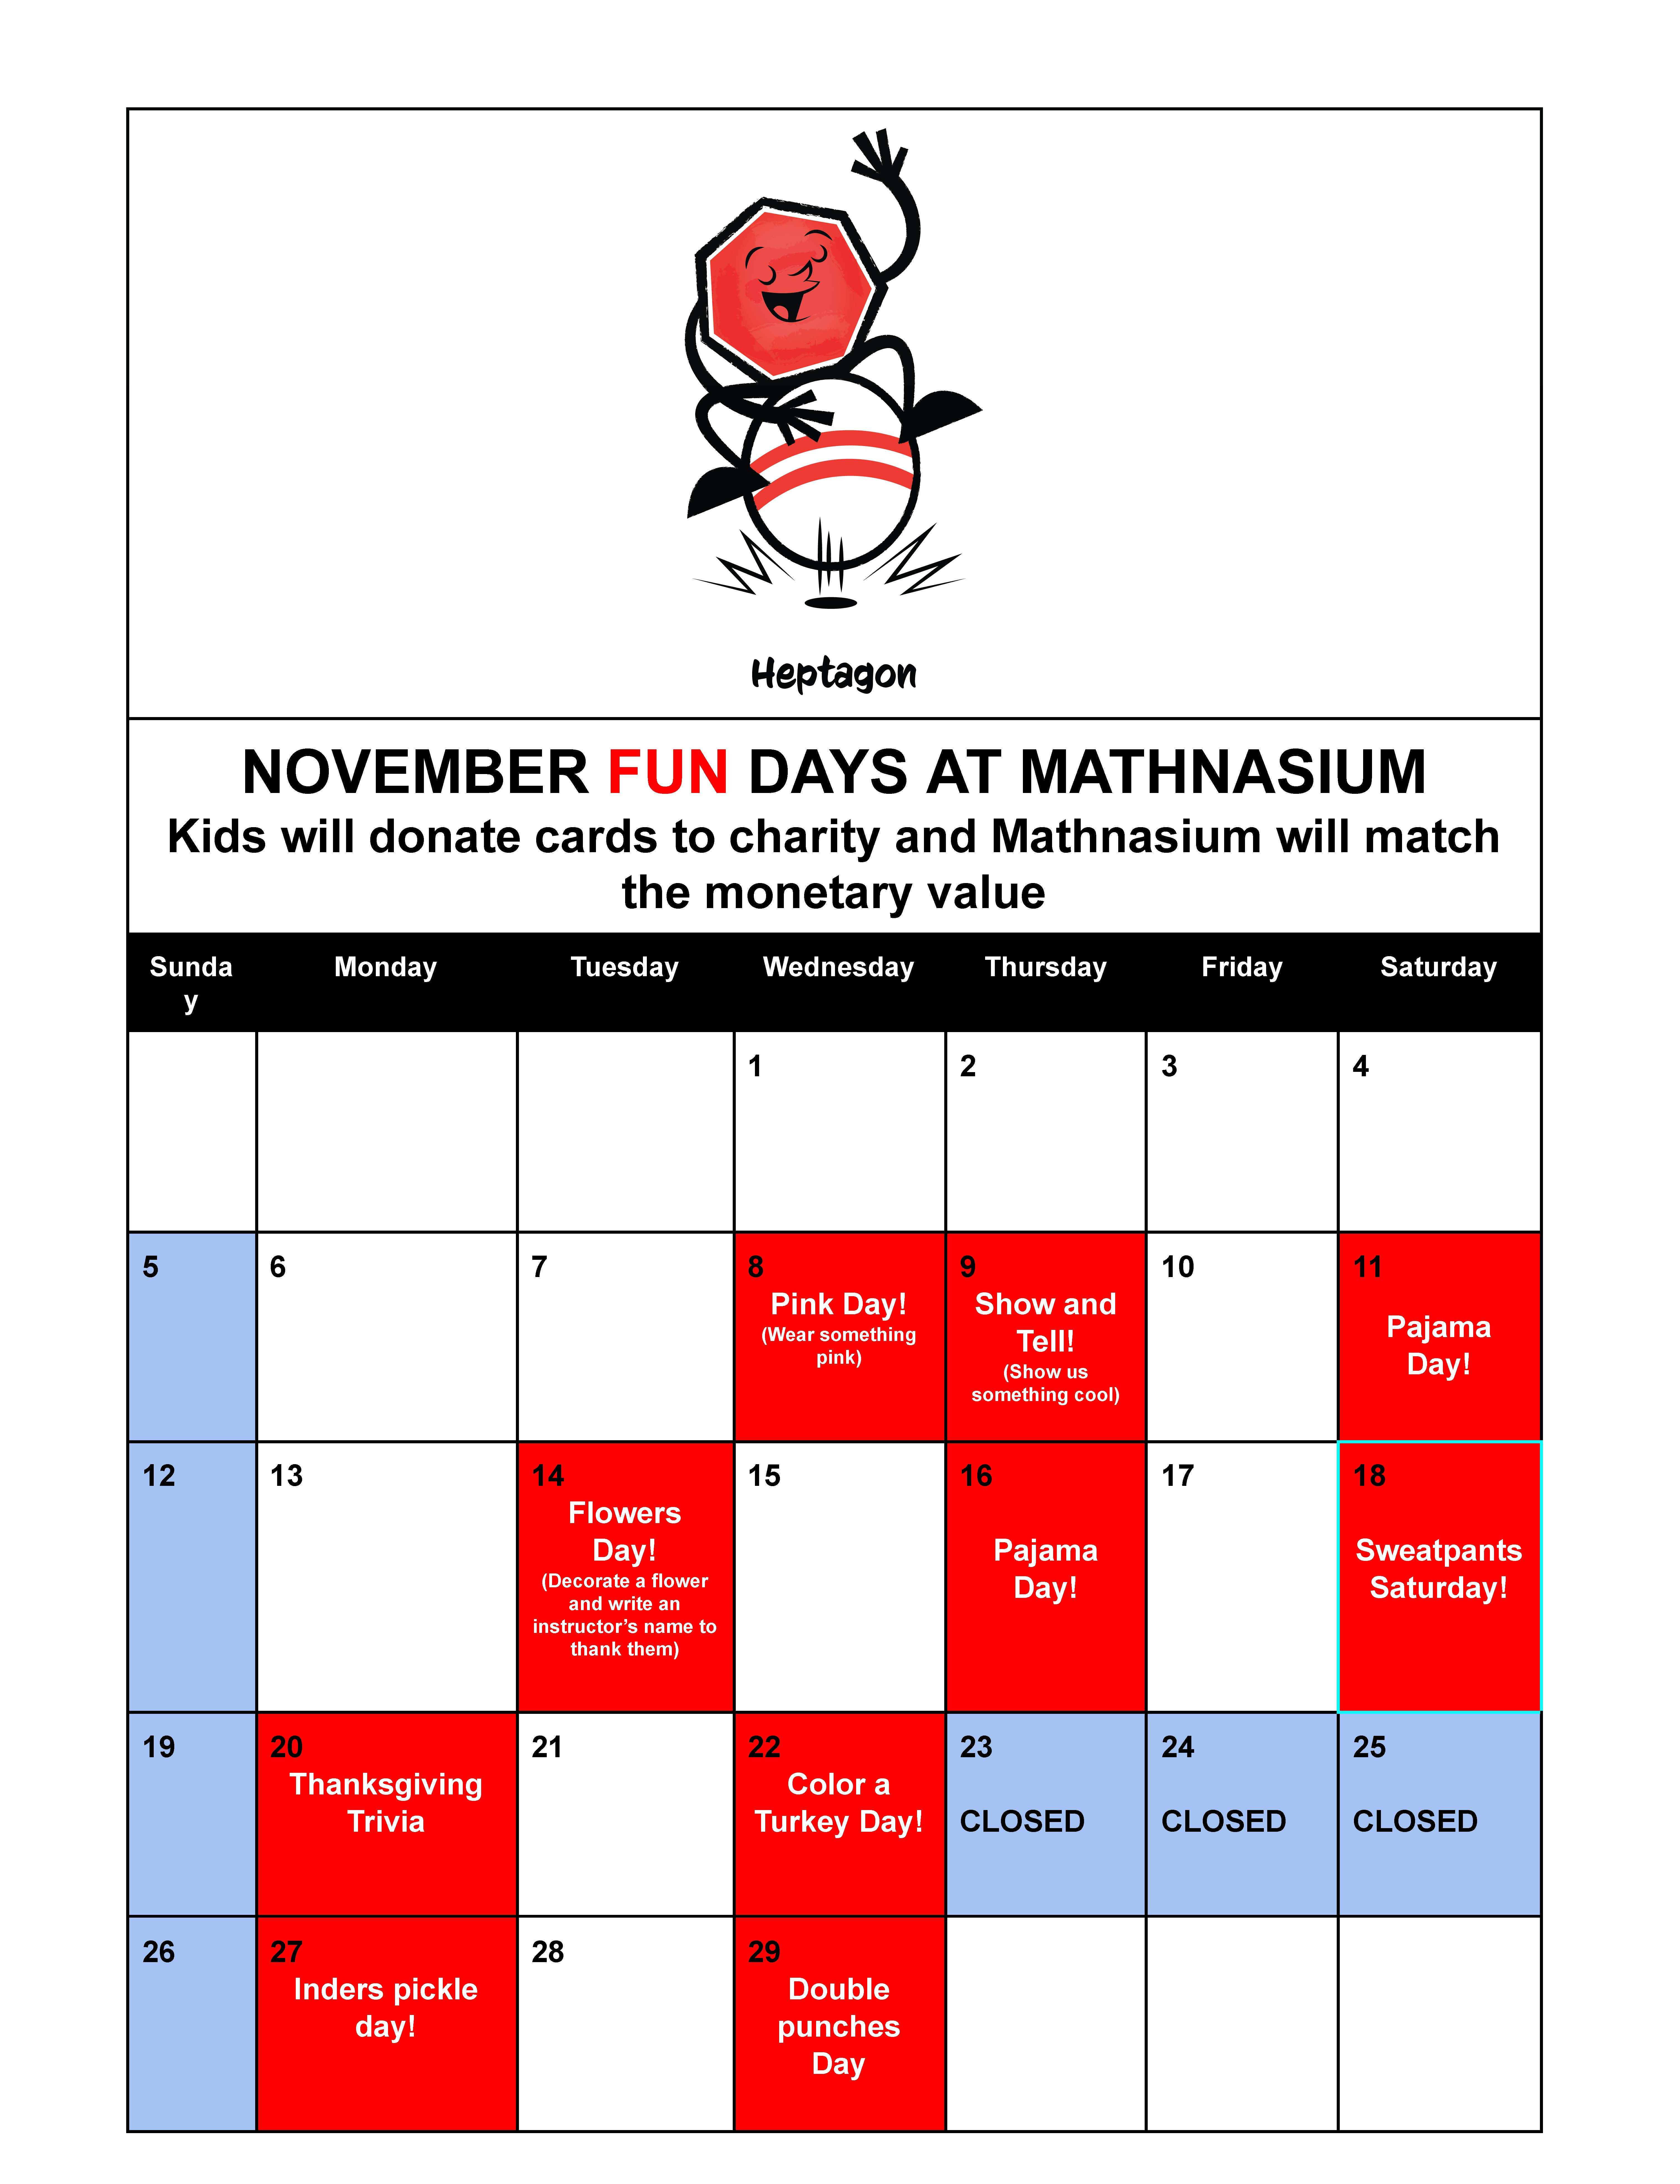 November 2023 Fun Calendar